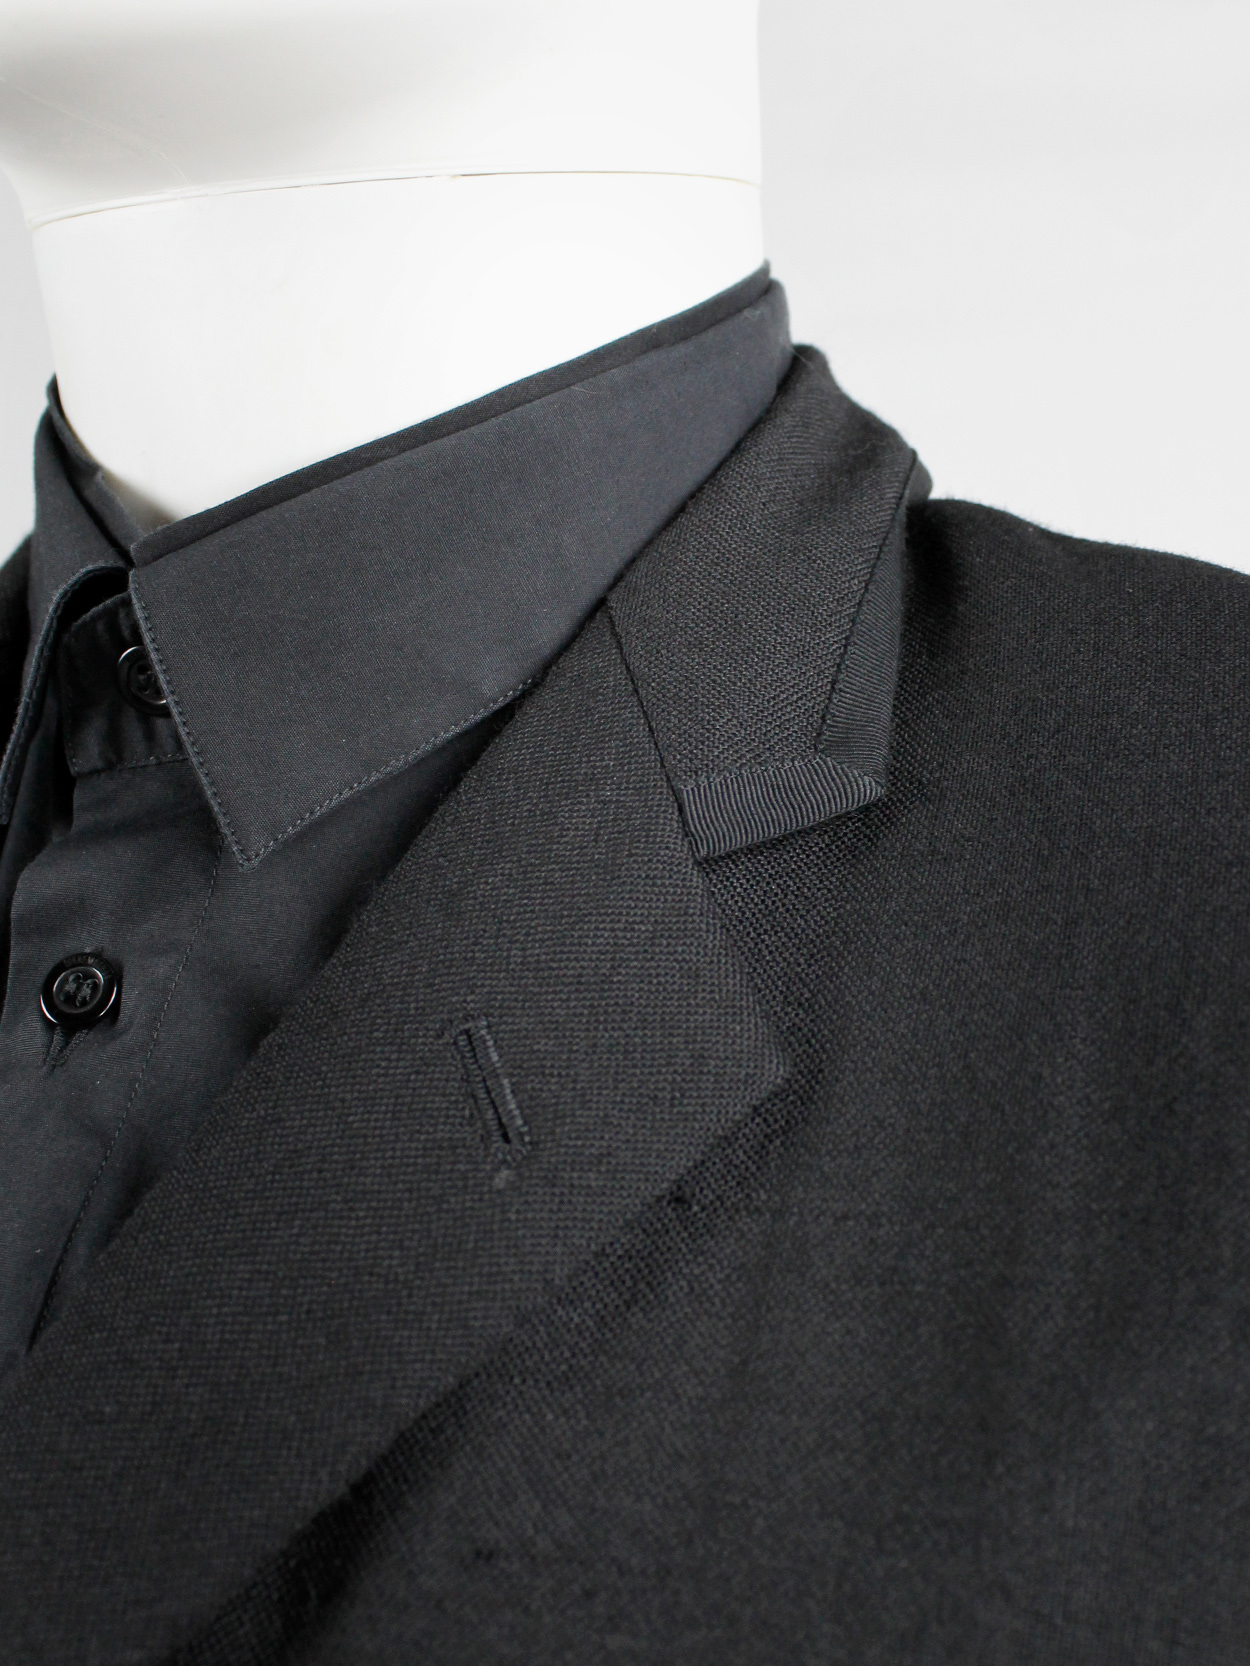 Comme des Garçons Homme black five-button blazer with 3 different front ...